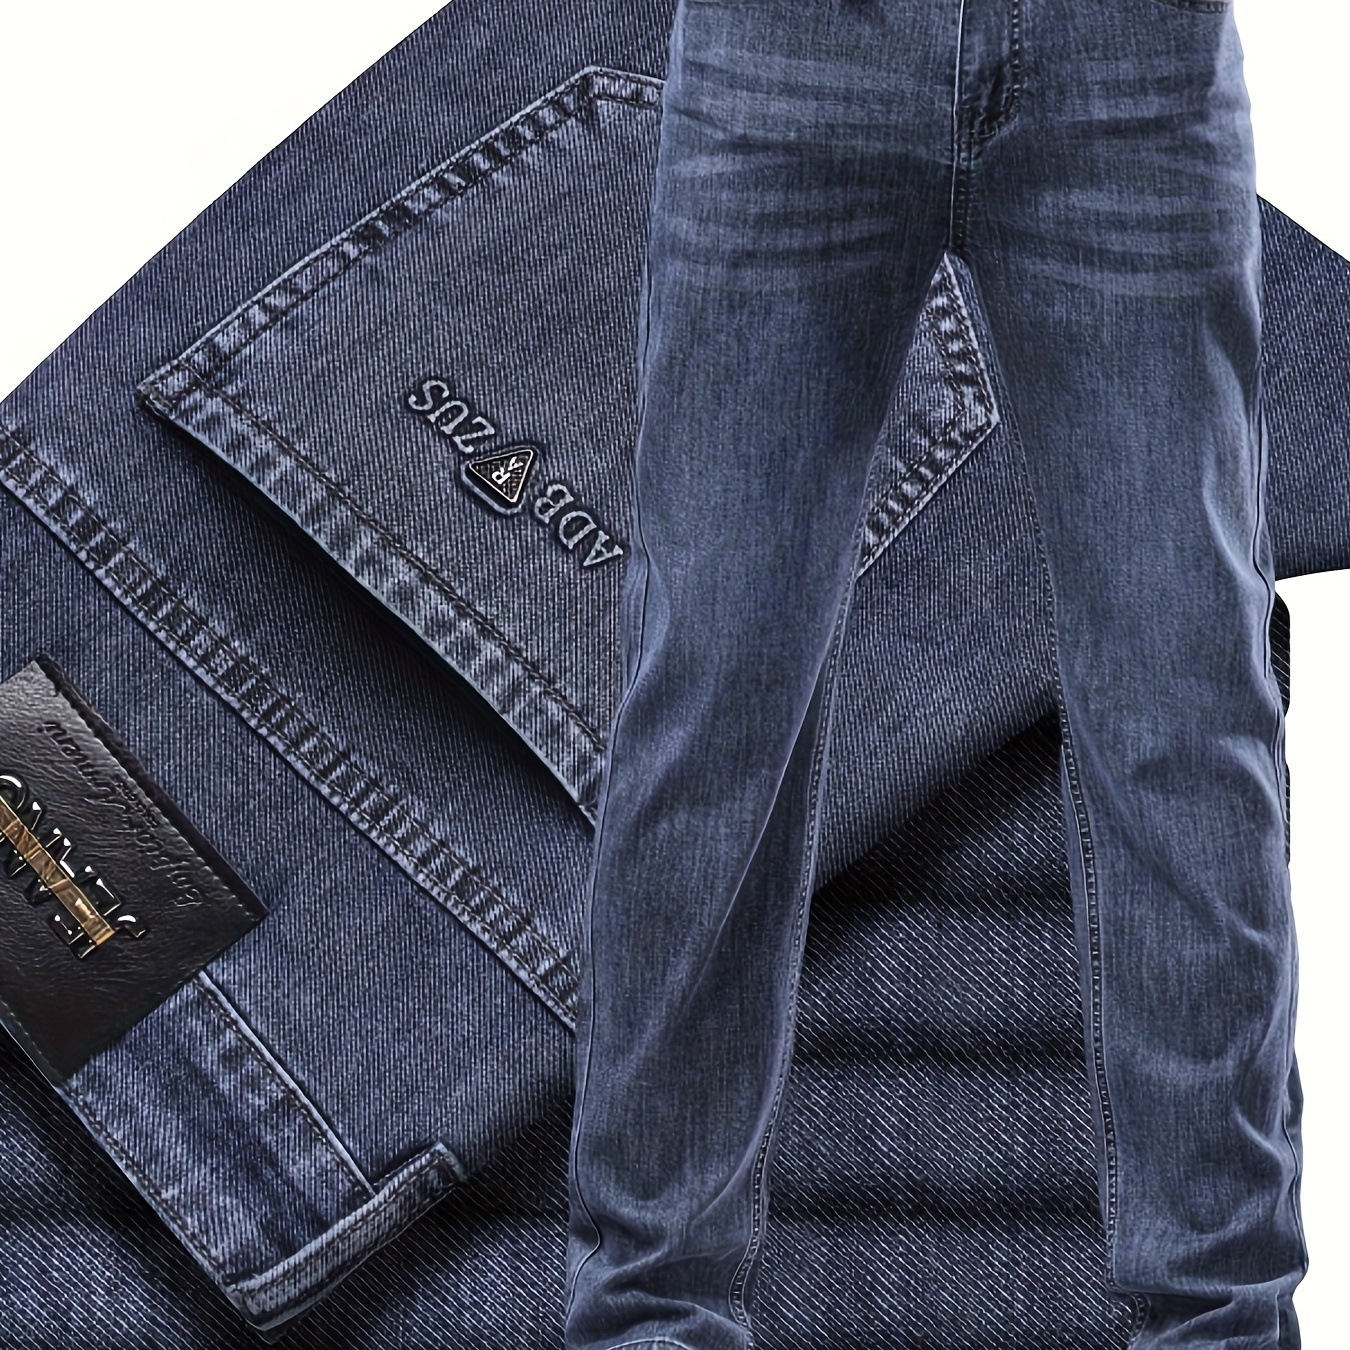 

Classic Design Cotton Blend Jeans, Men's Casual Business Straight Leg Denim Pants, Men's Straight Leg Business Trousers